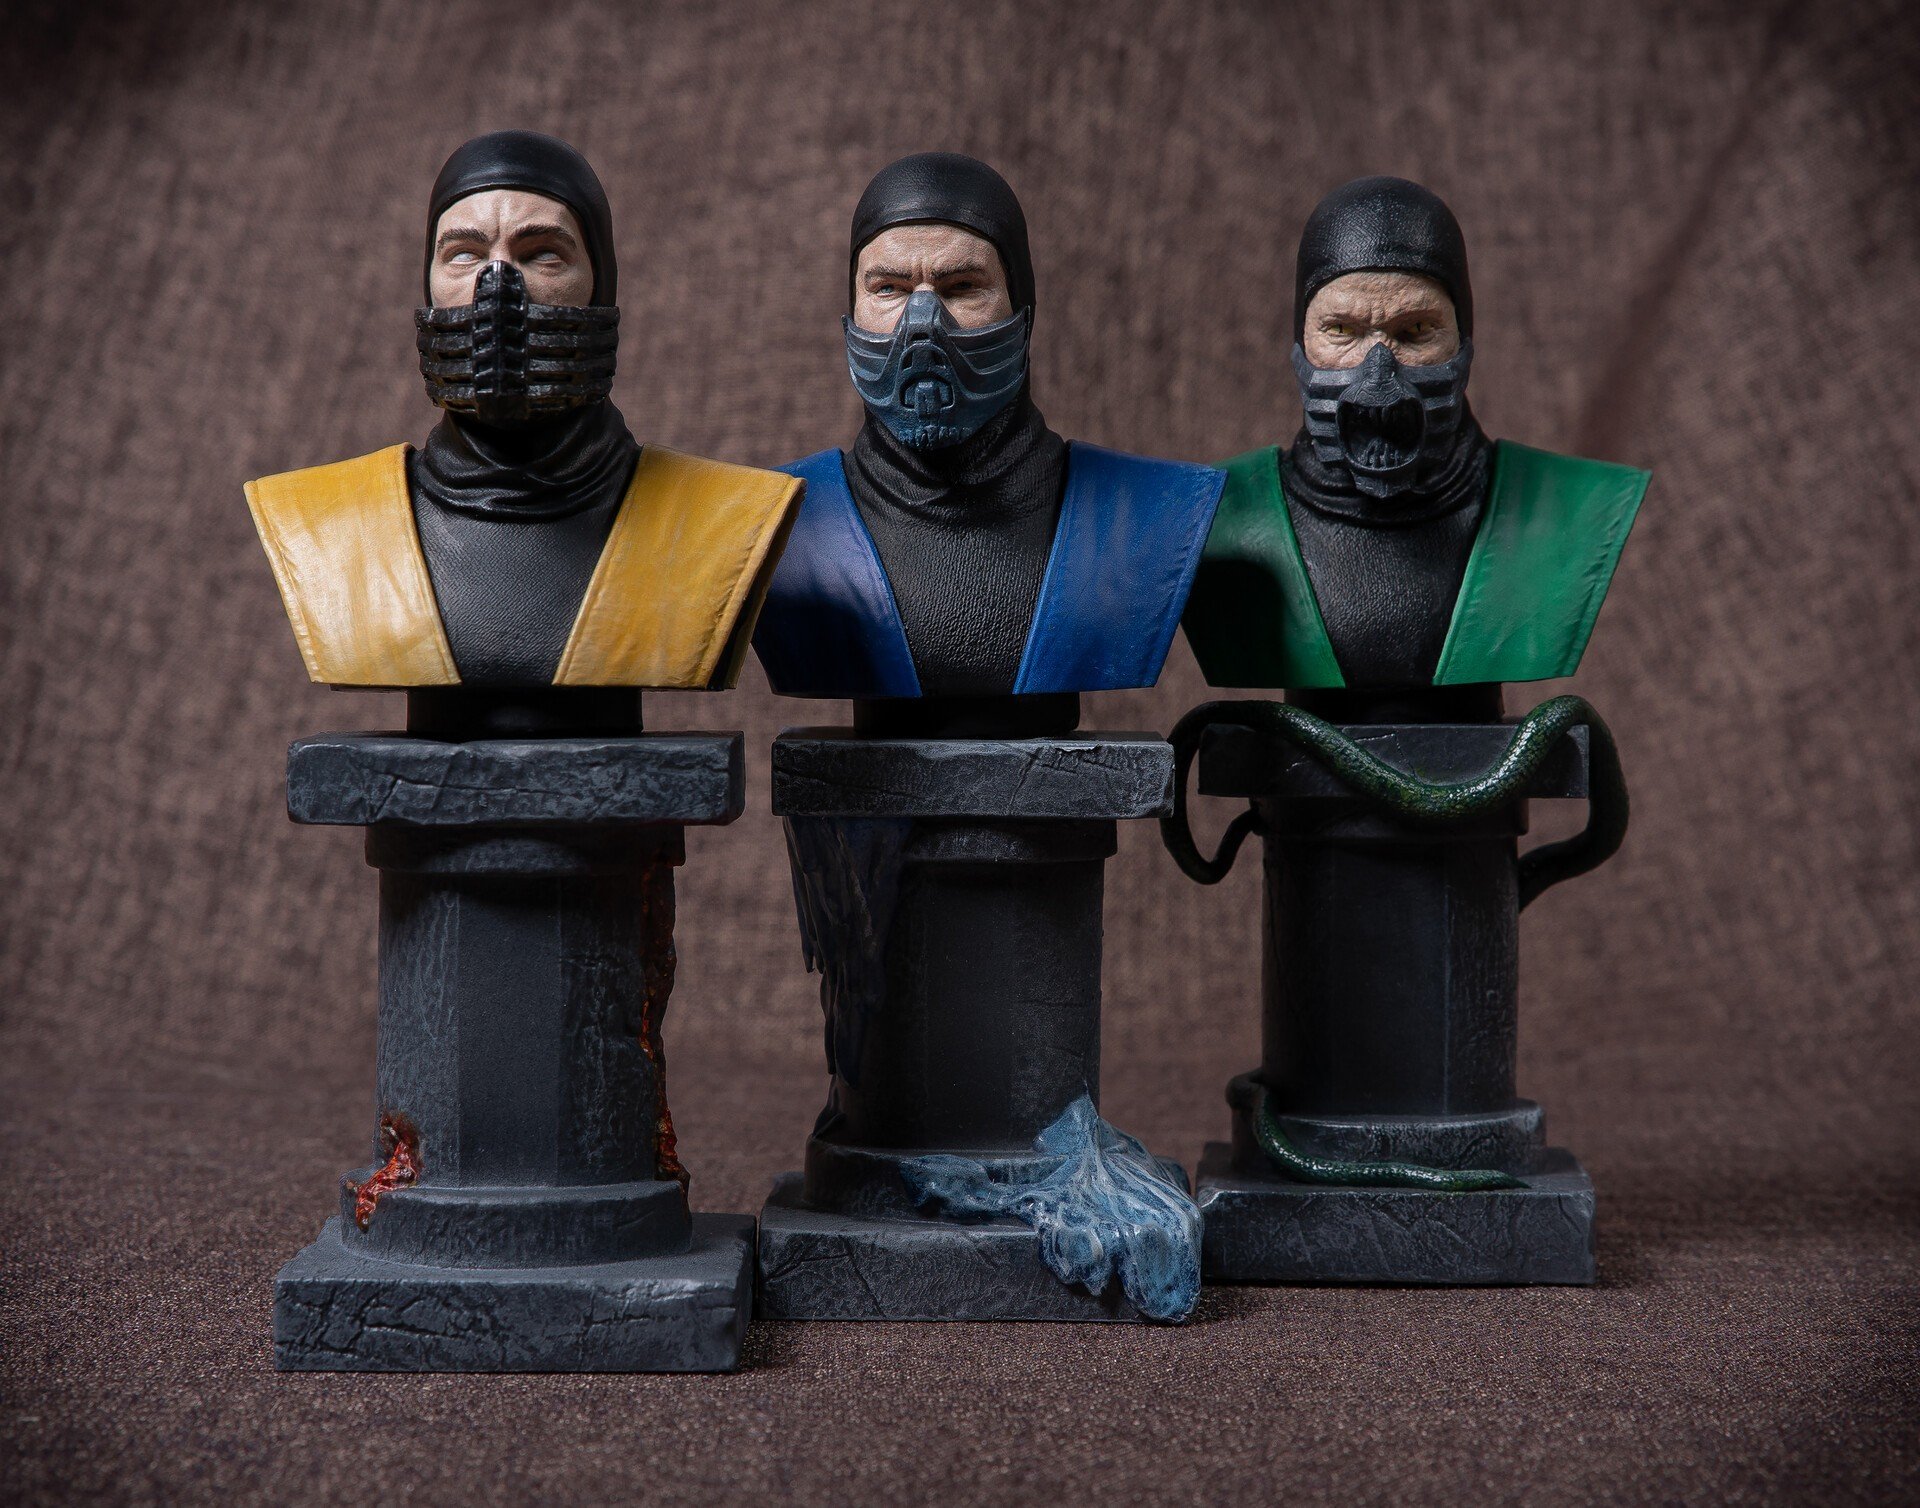 Скульптор показал бюсты персонажей Mortal Kombat сделанные на 3Dпринтере